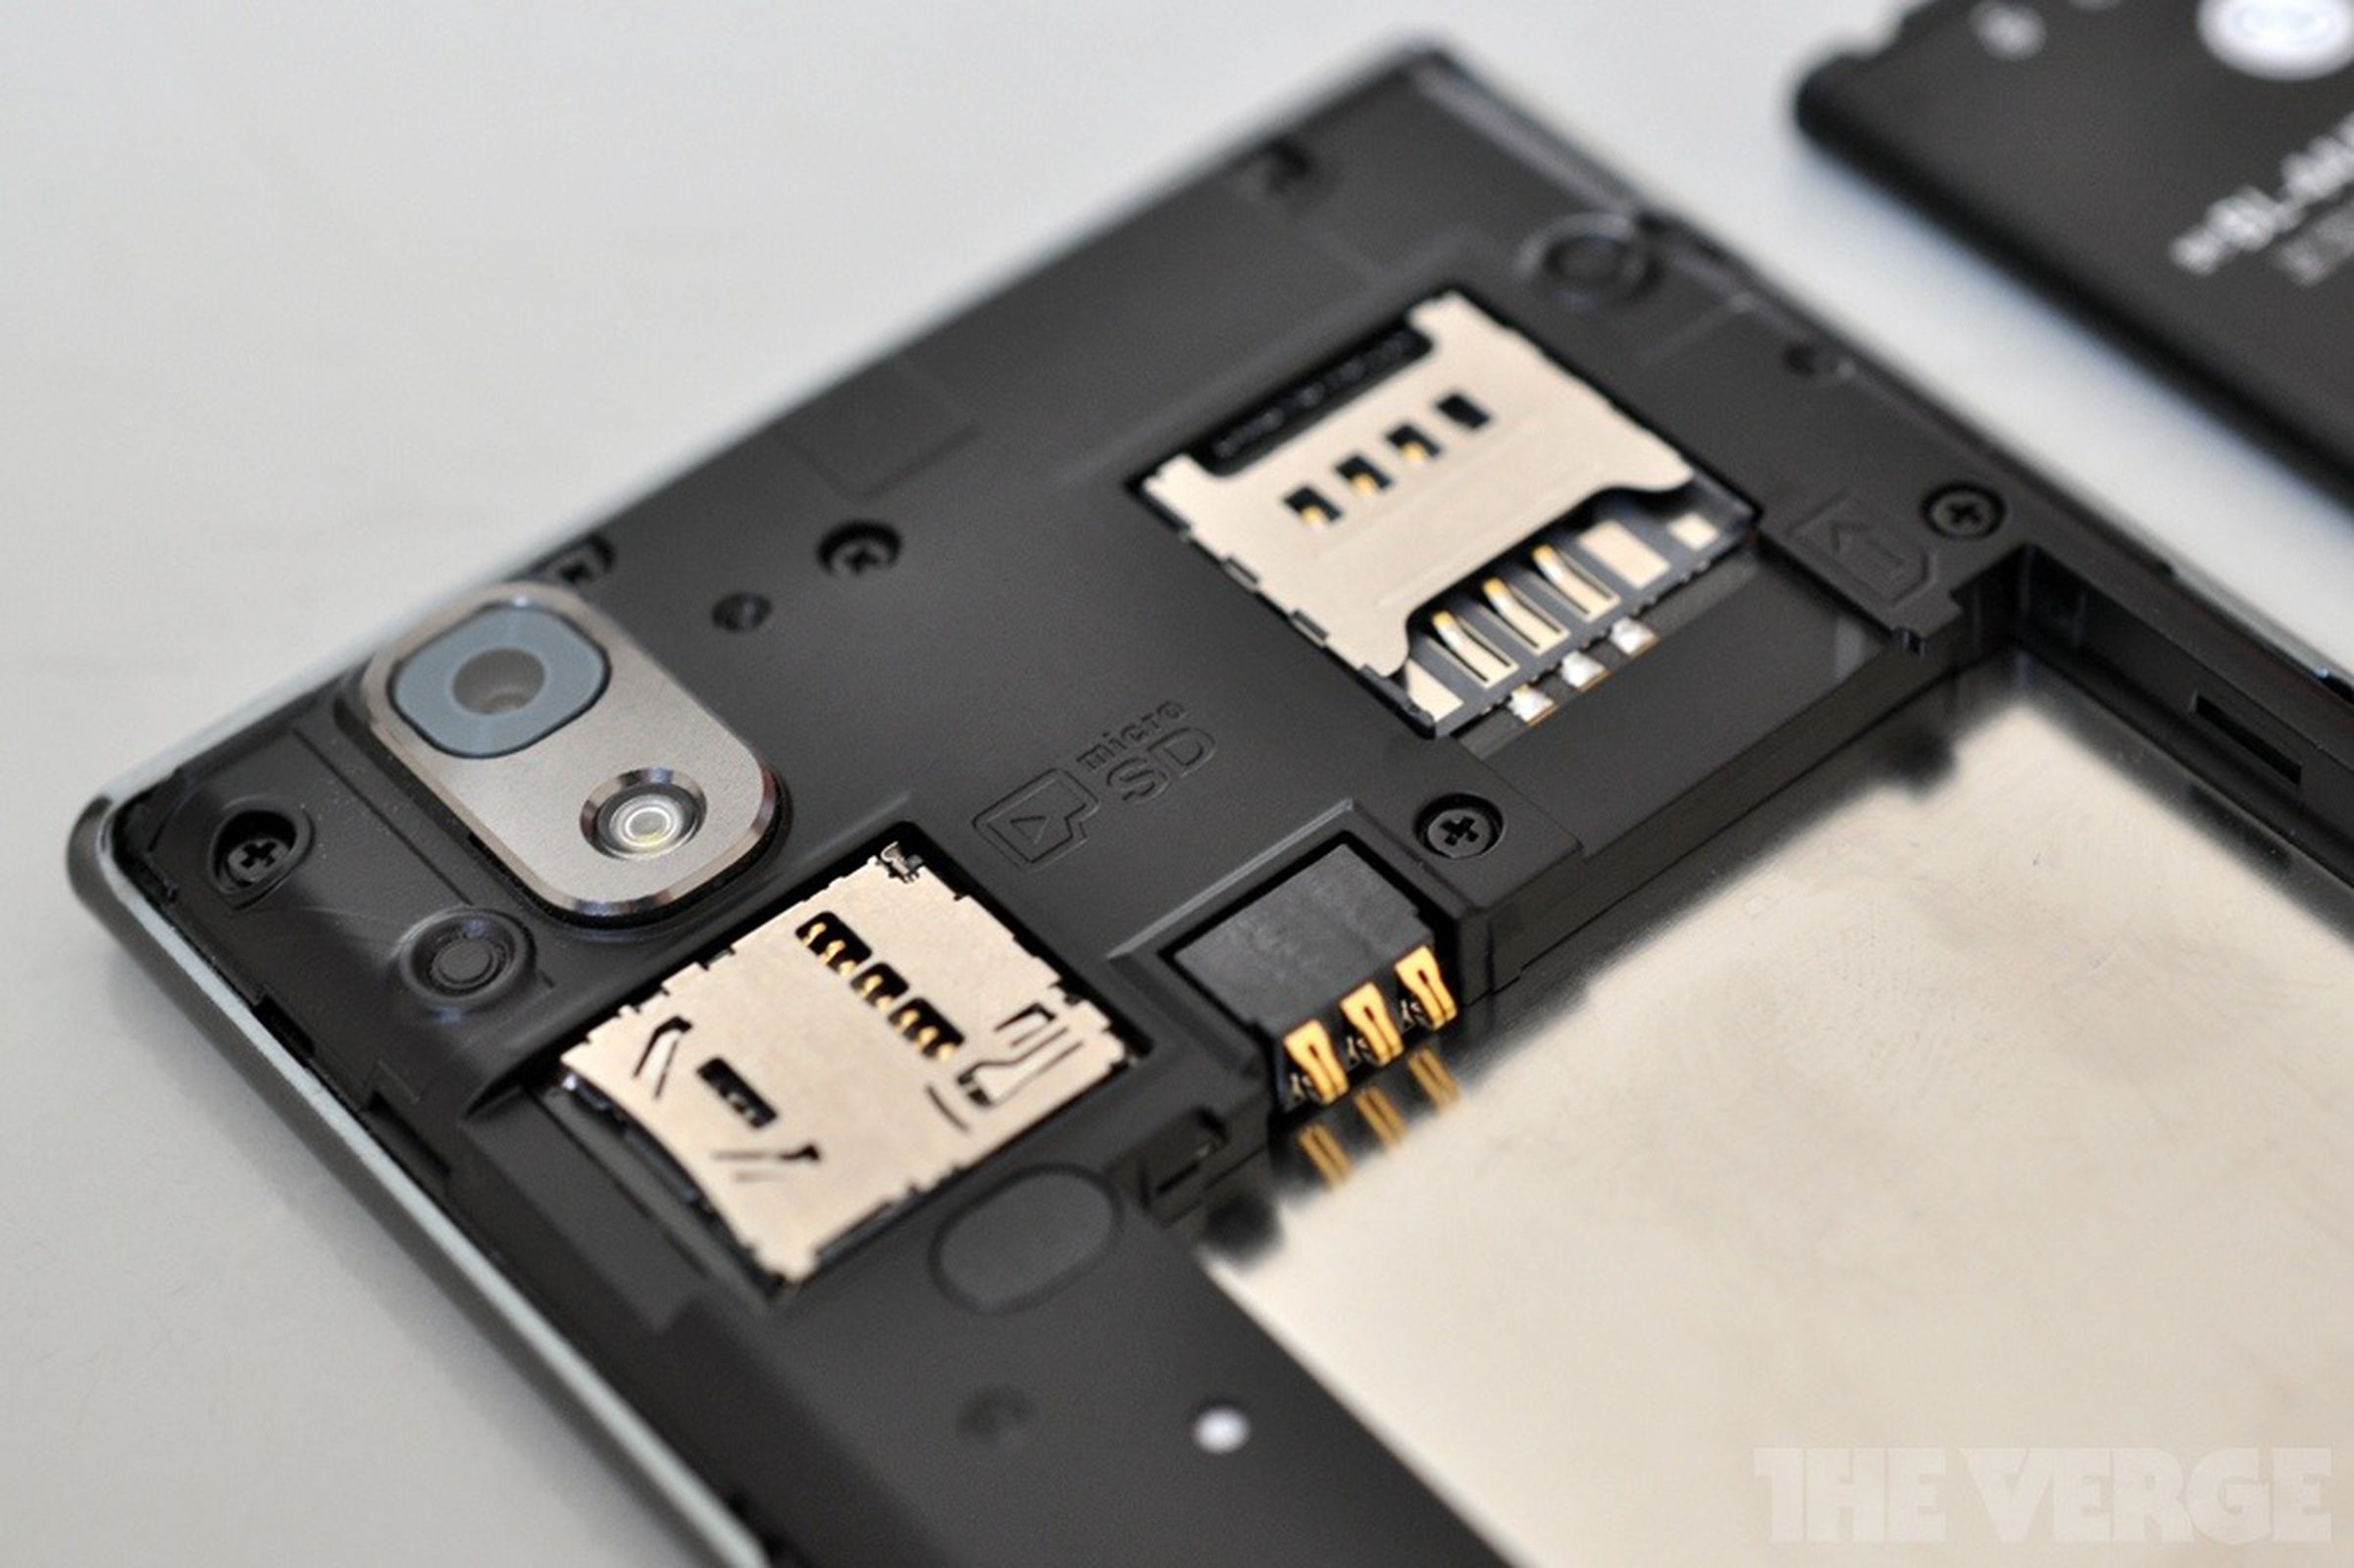 LG Prada Phone 3.0 review pictures